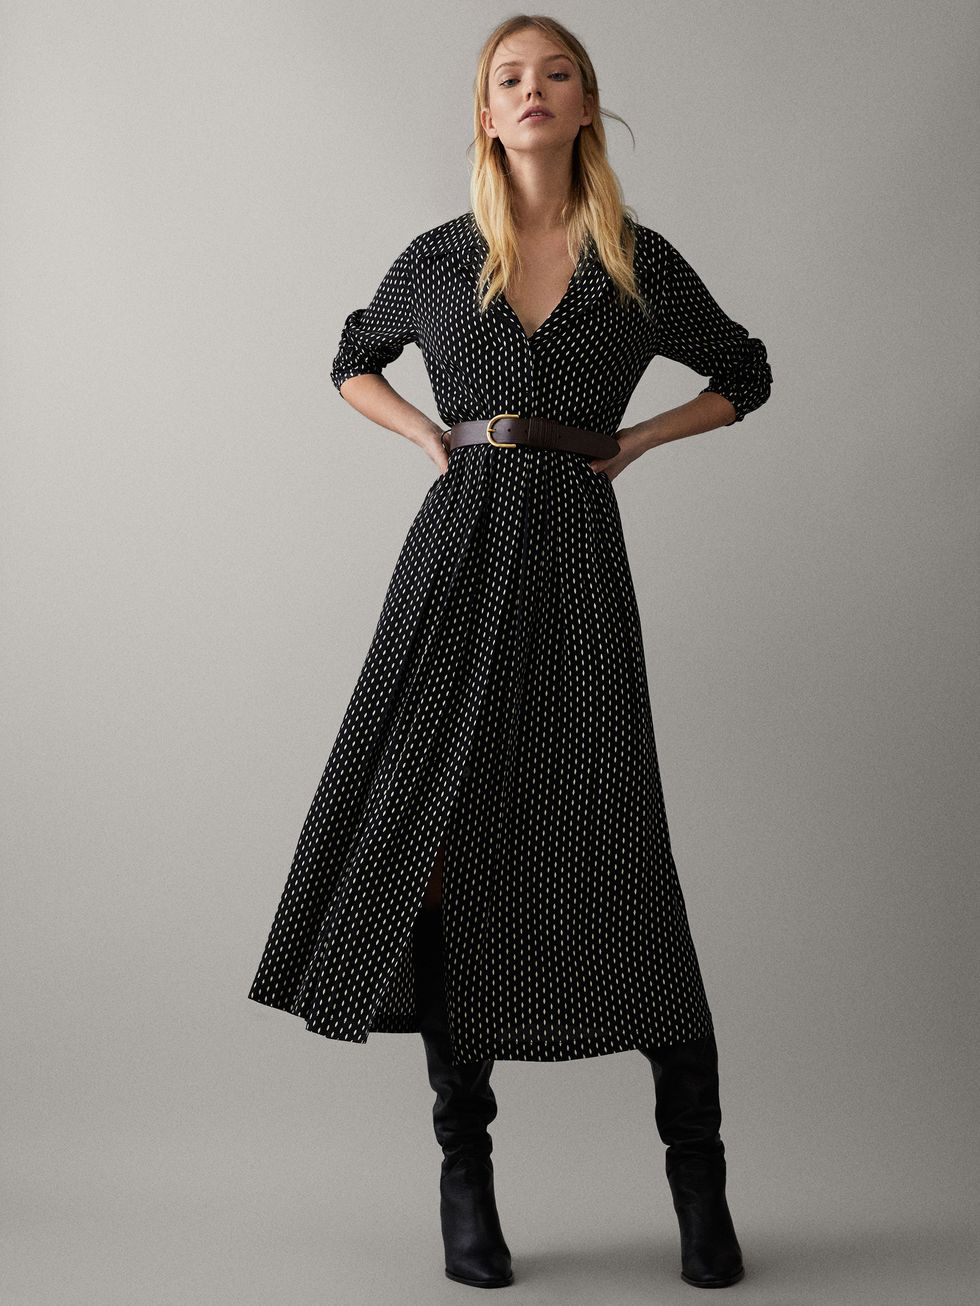 El de lunares de Massimo Dutti para las que quieren llevar el de Zara que lleva todo el mundo - Necesitas este vestido camisero de lunares de Massimo Dutti